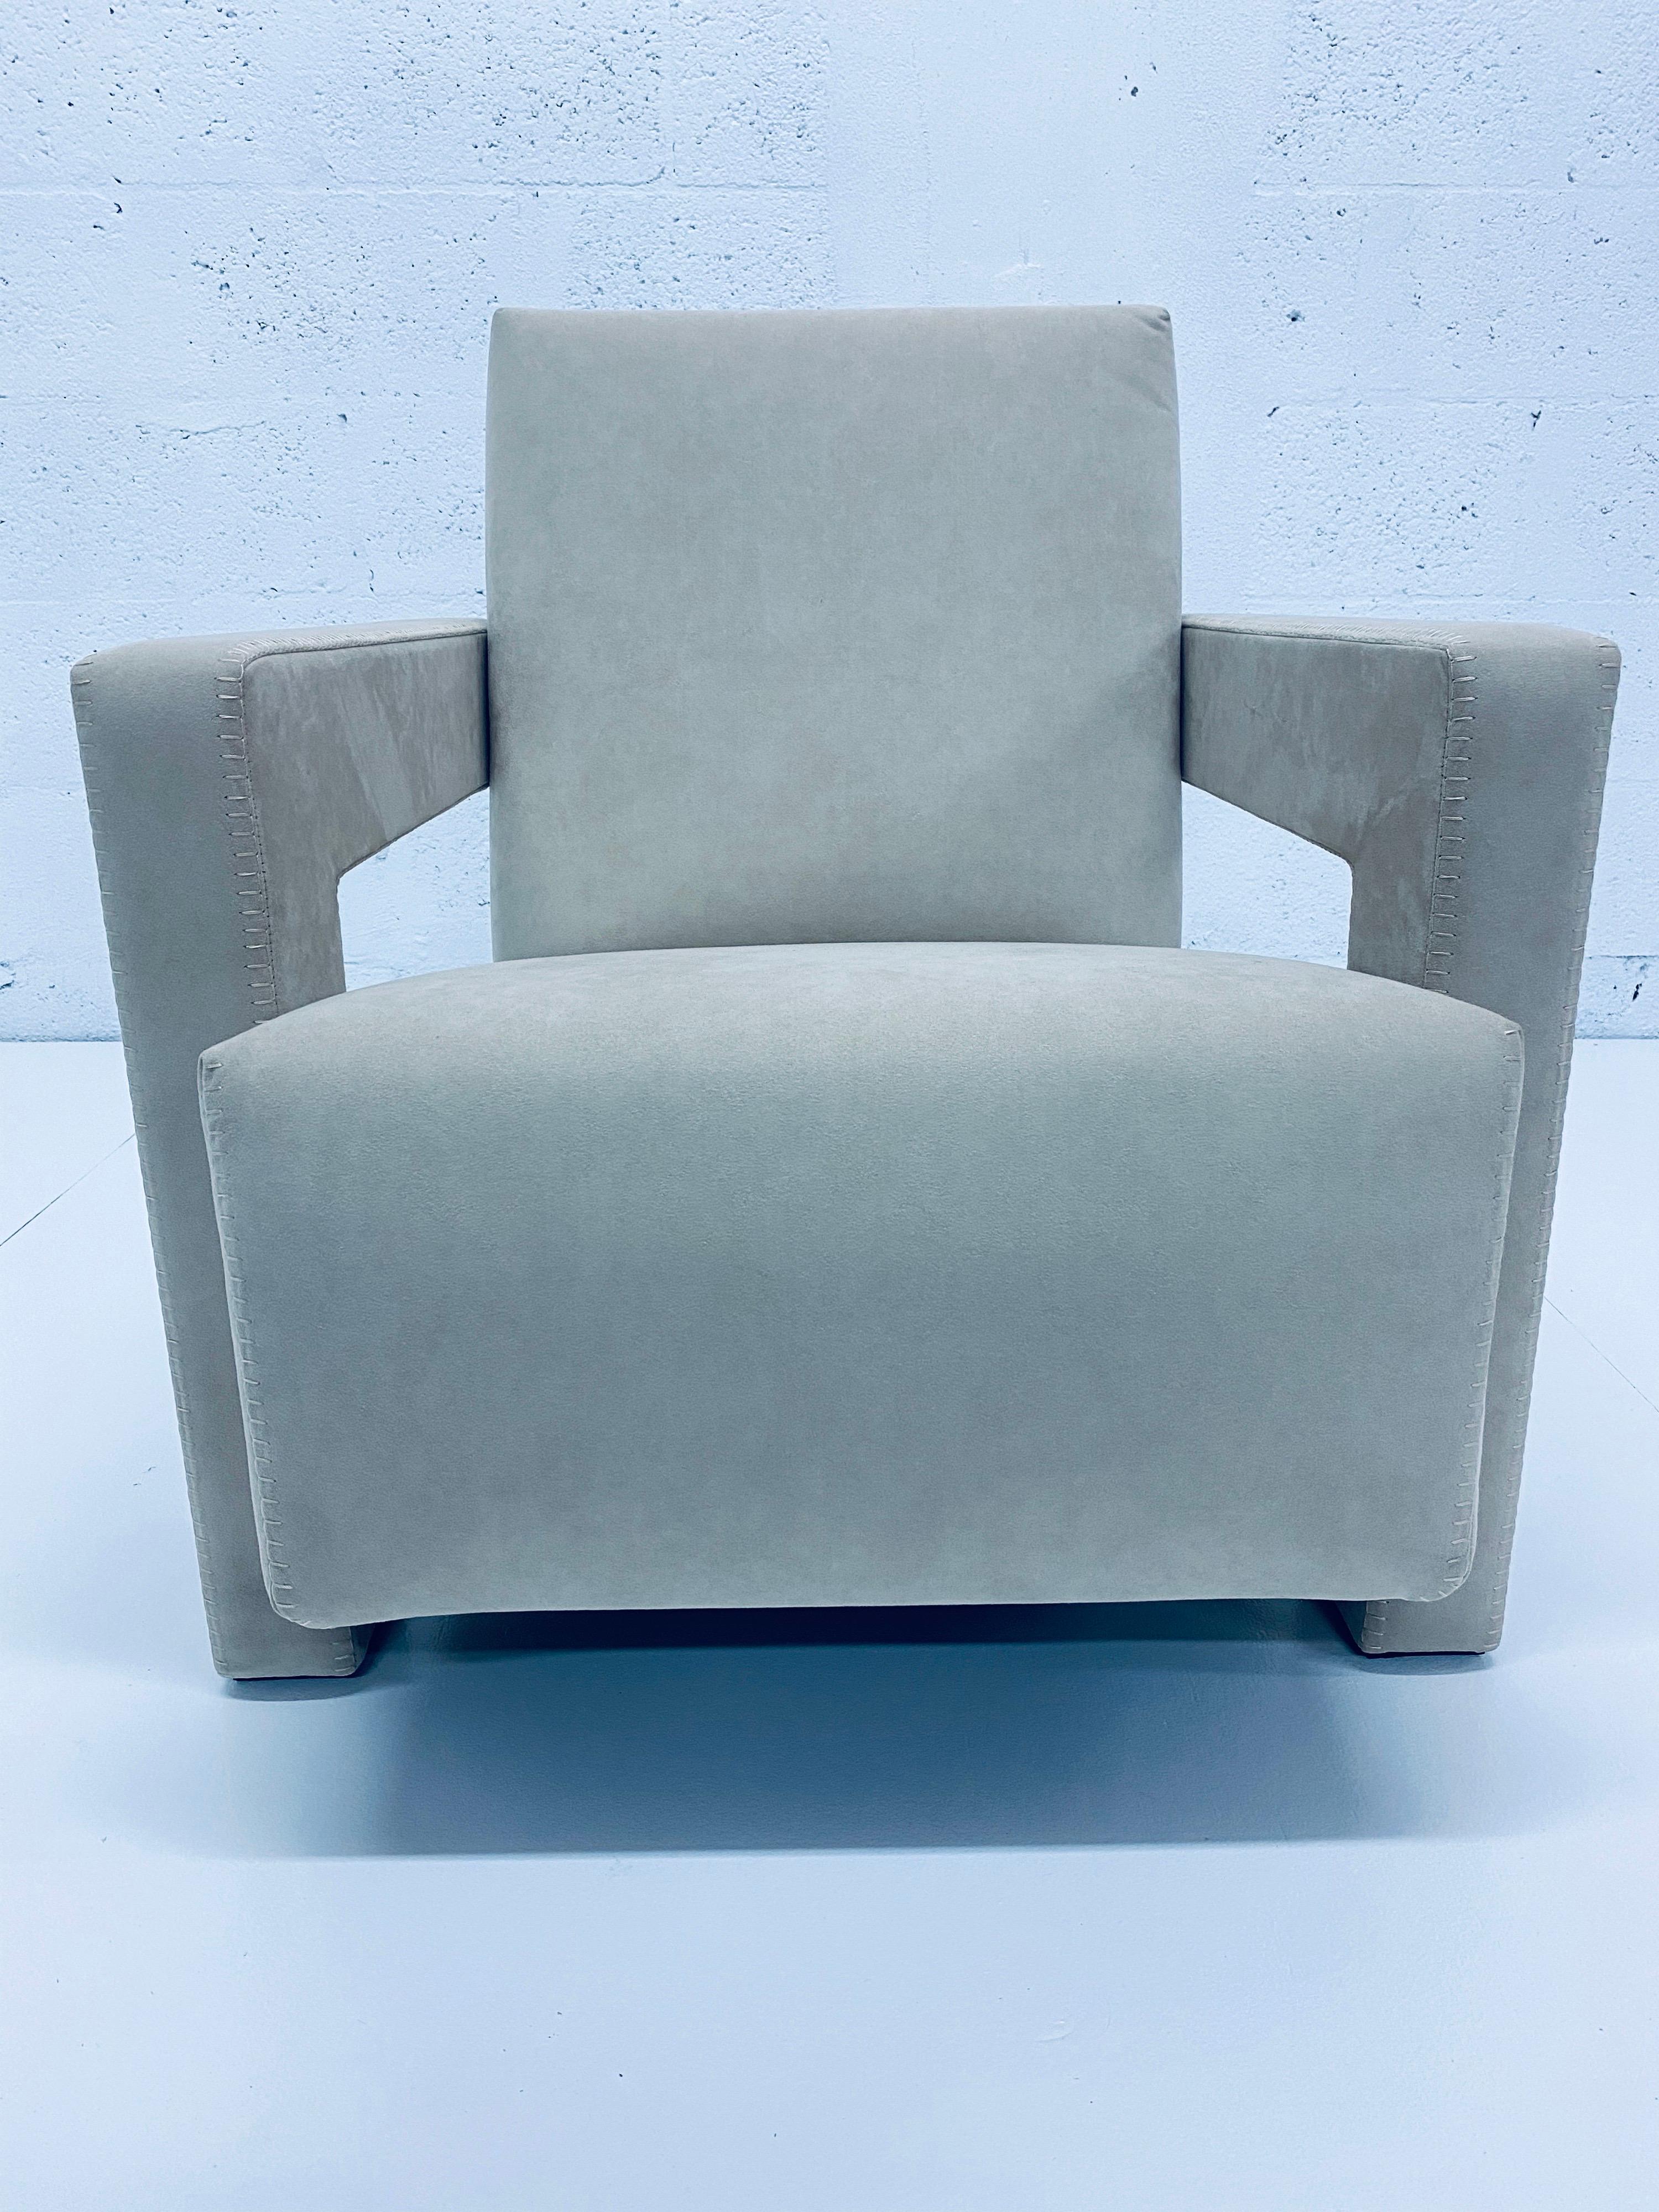 Bauhaus Gerrit Rietveld “Utrecht” Lounge Chair for Cassina